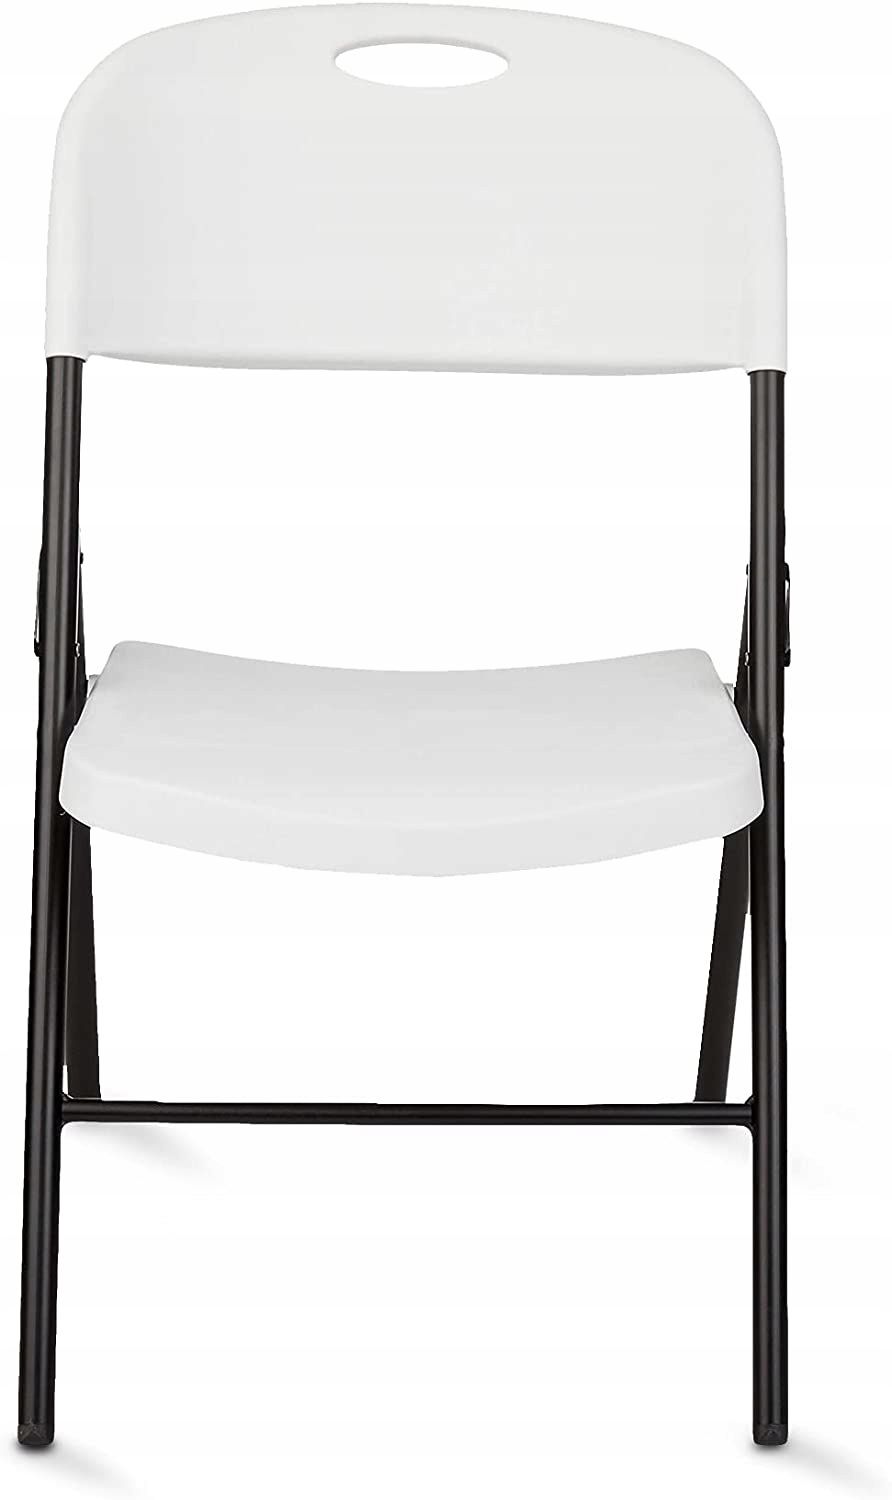 4x krzesło amazon basics 91,44 x 56,65 x 49,78 cm białe